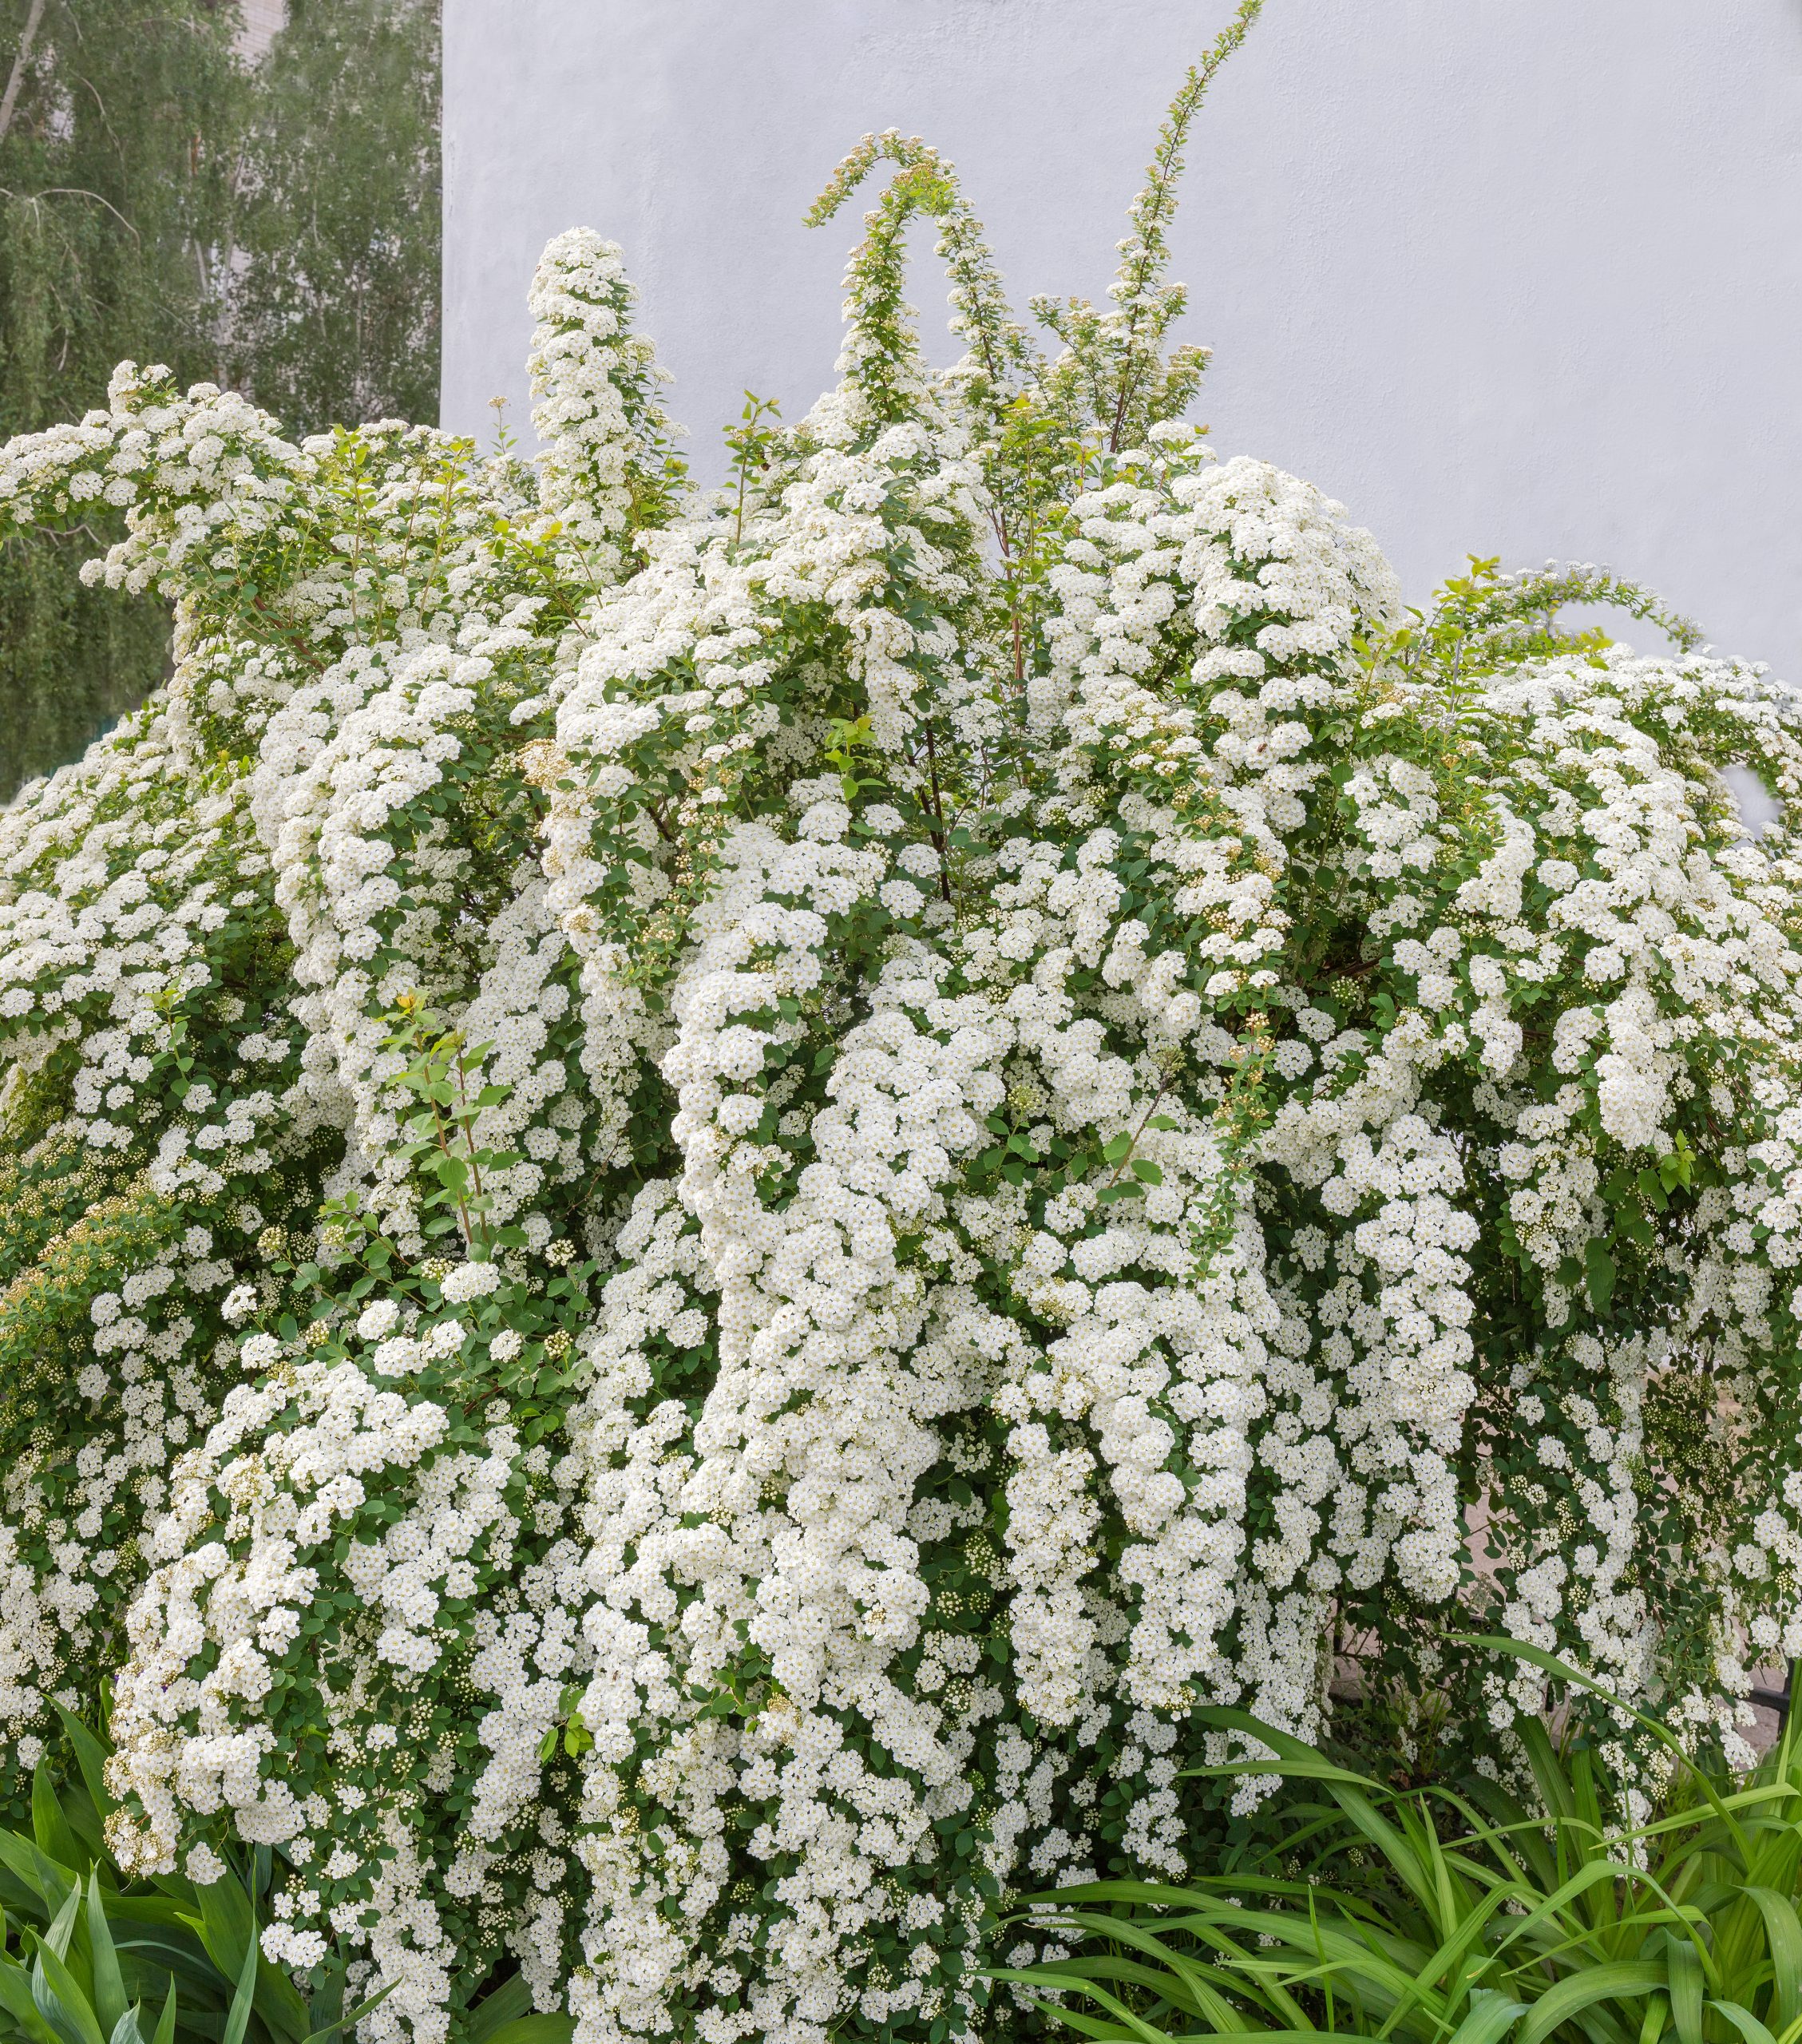 Spiraea ×cinerea 'Grefsheim' - Tawuła szara